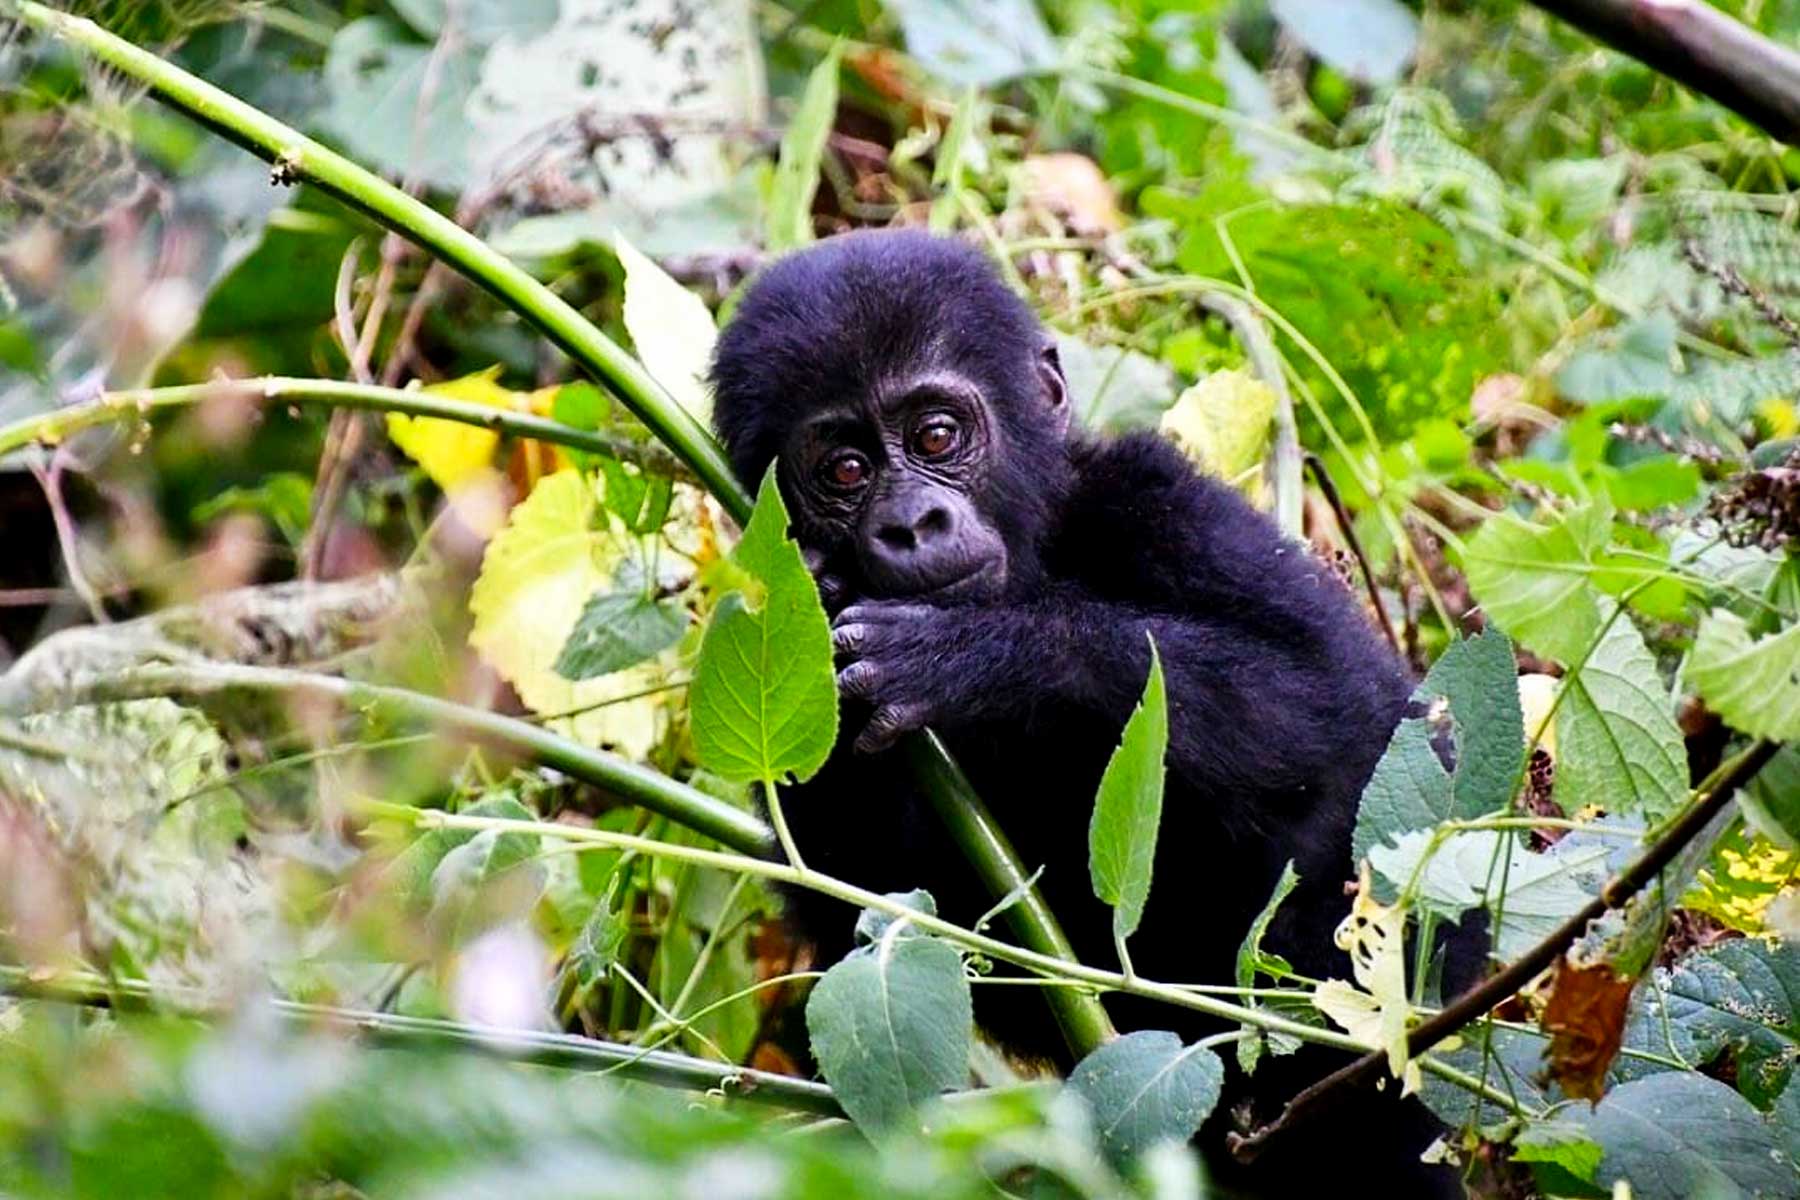 3-days-uganda-gorilla-trekking-express-safari